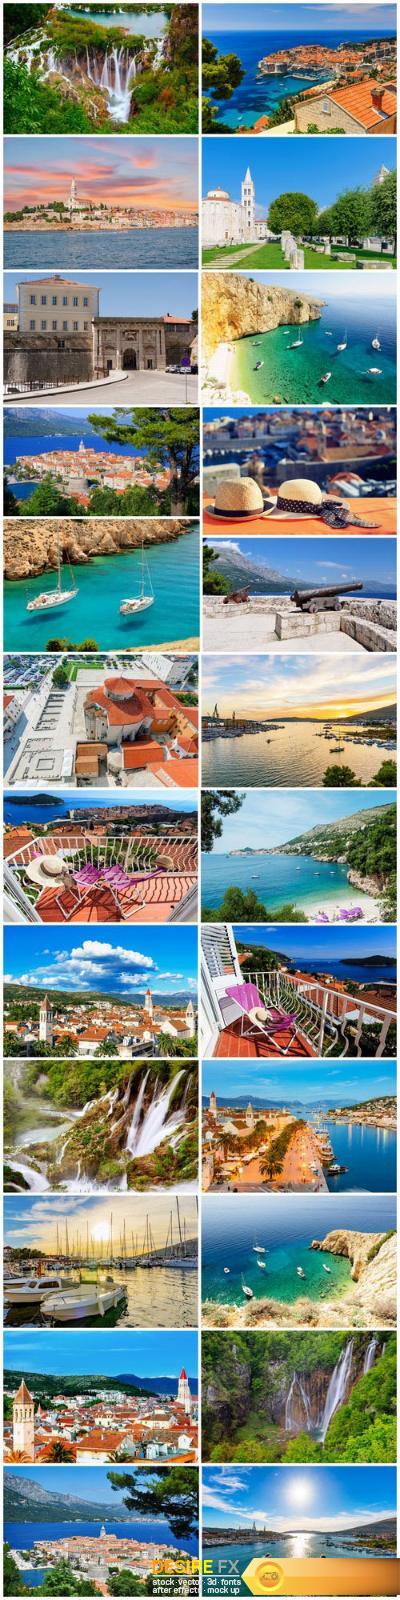 Vacation in Croatia 2 - 24xUHQ JPEG